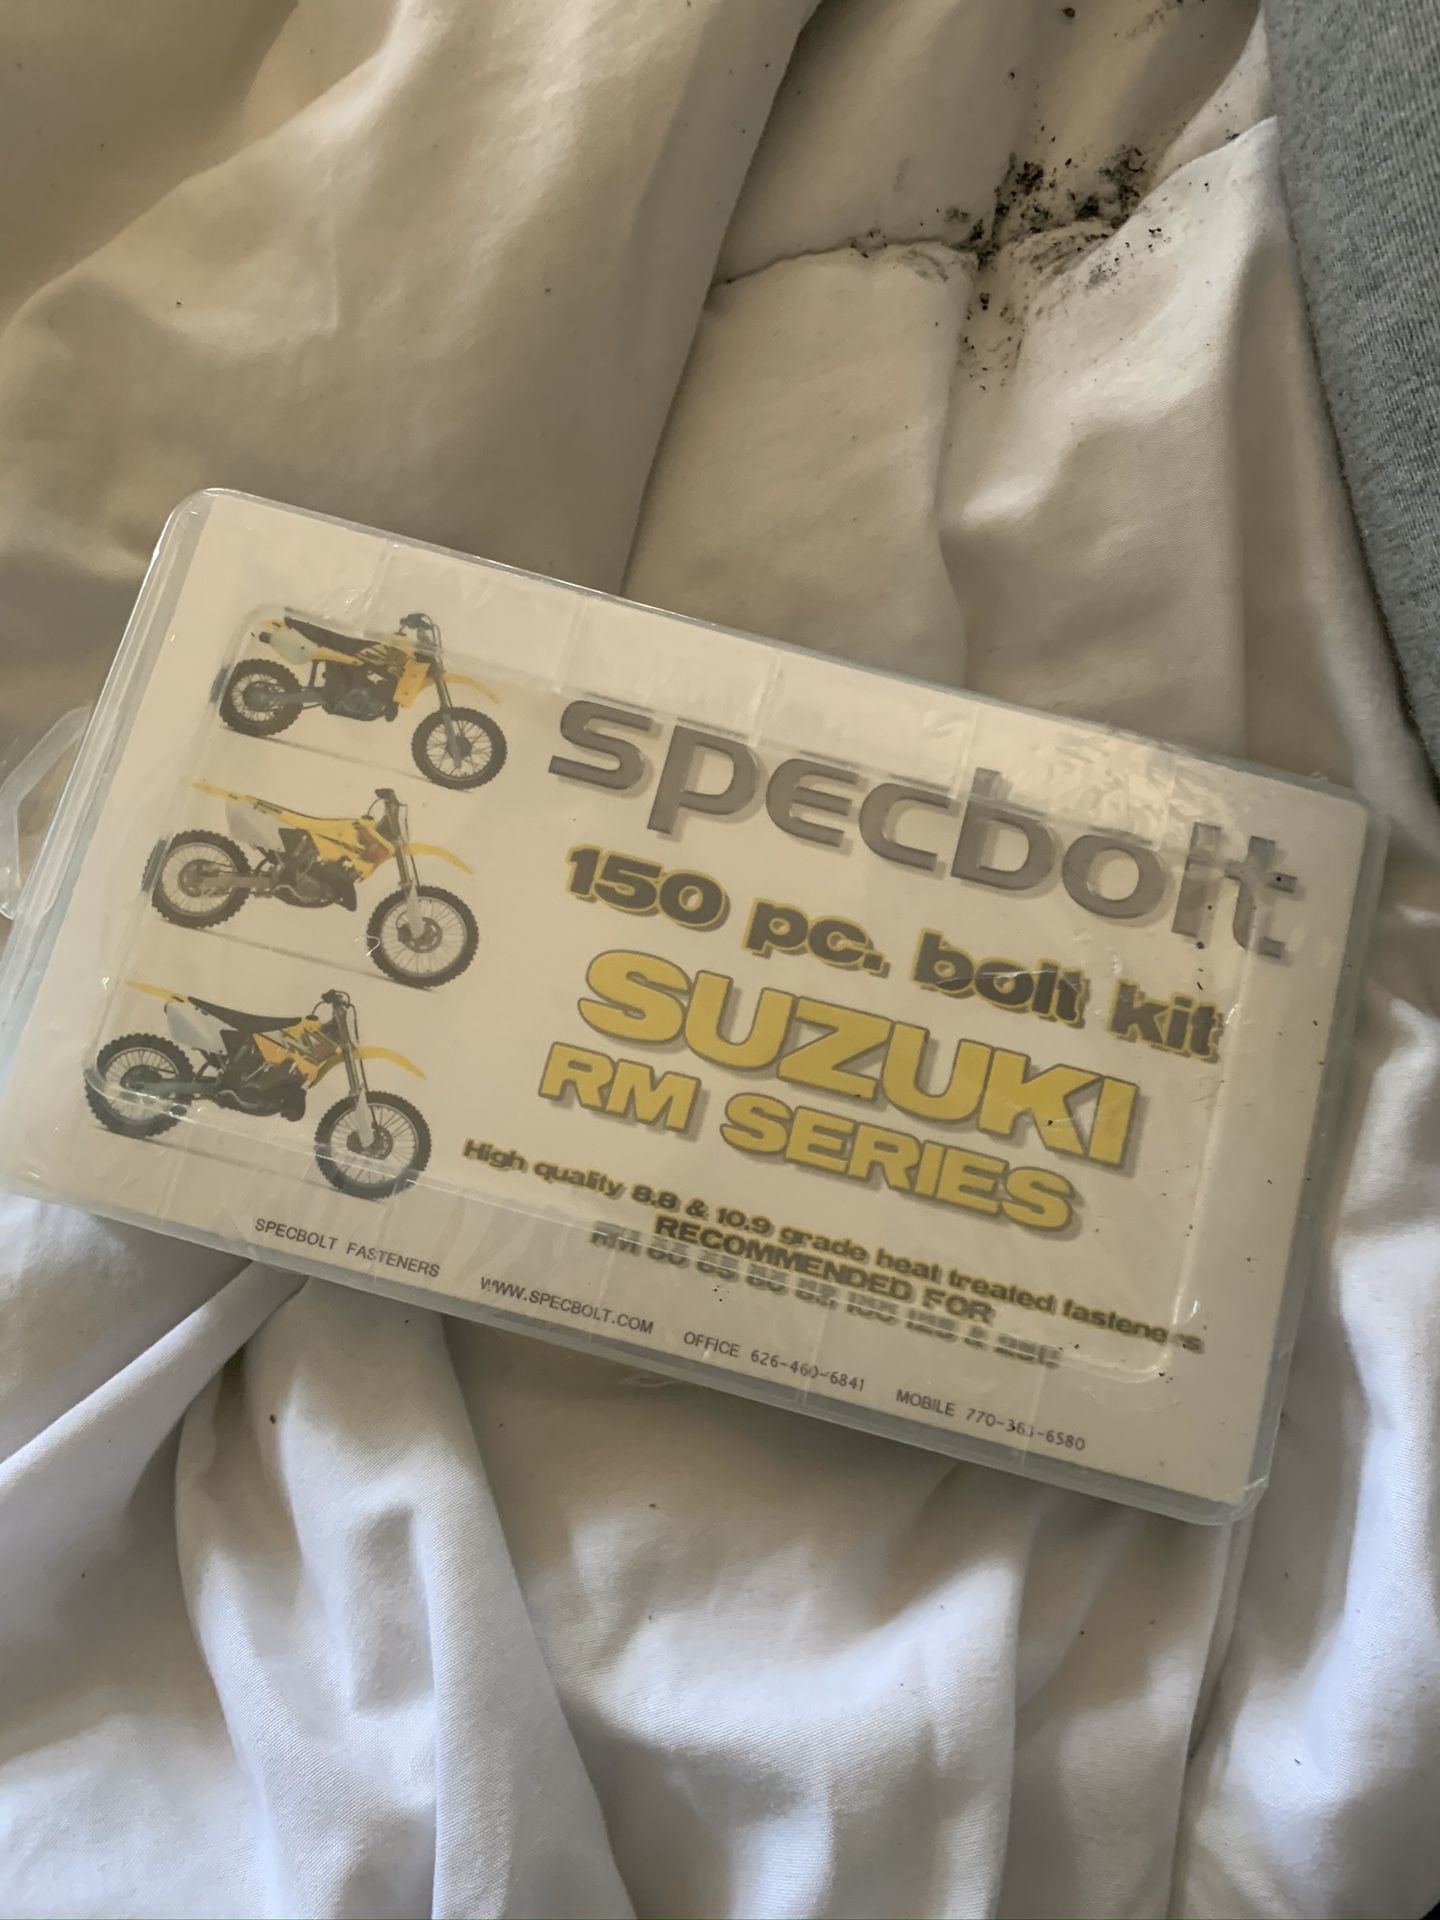 Suzuki Rm series bolt kit